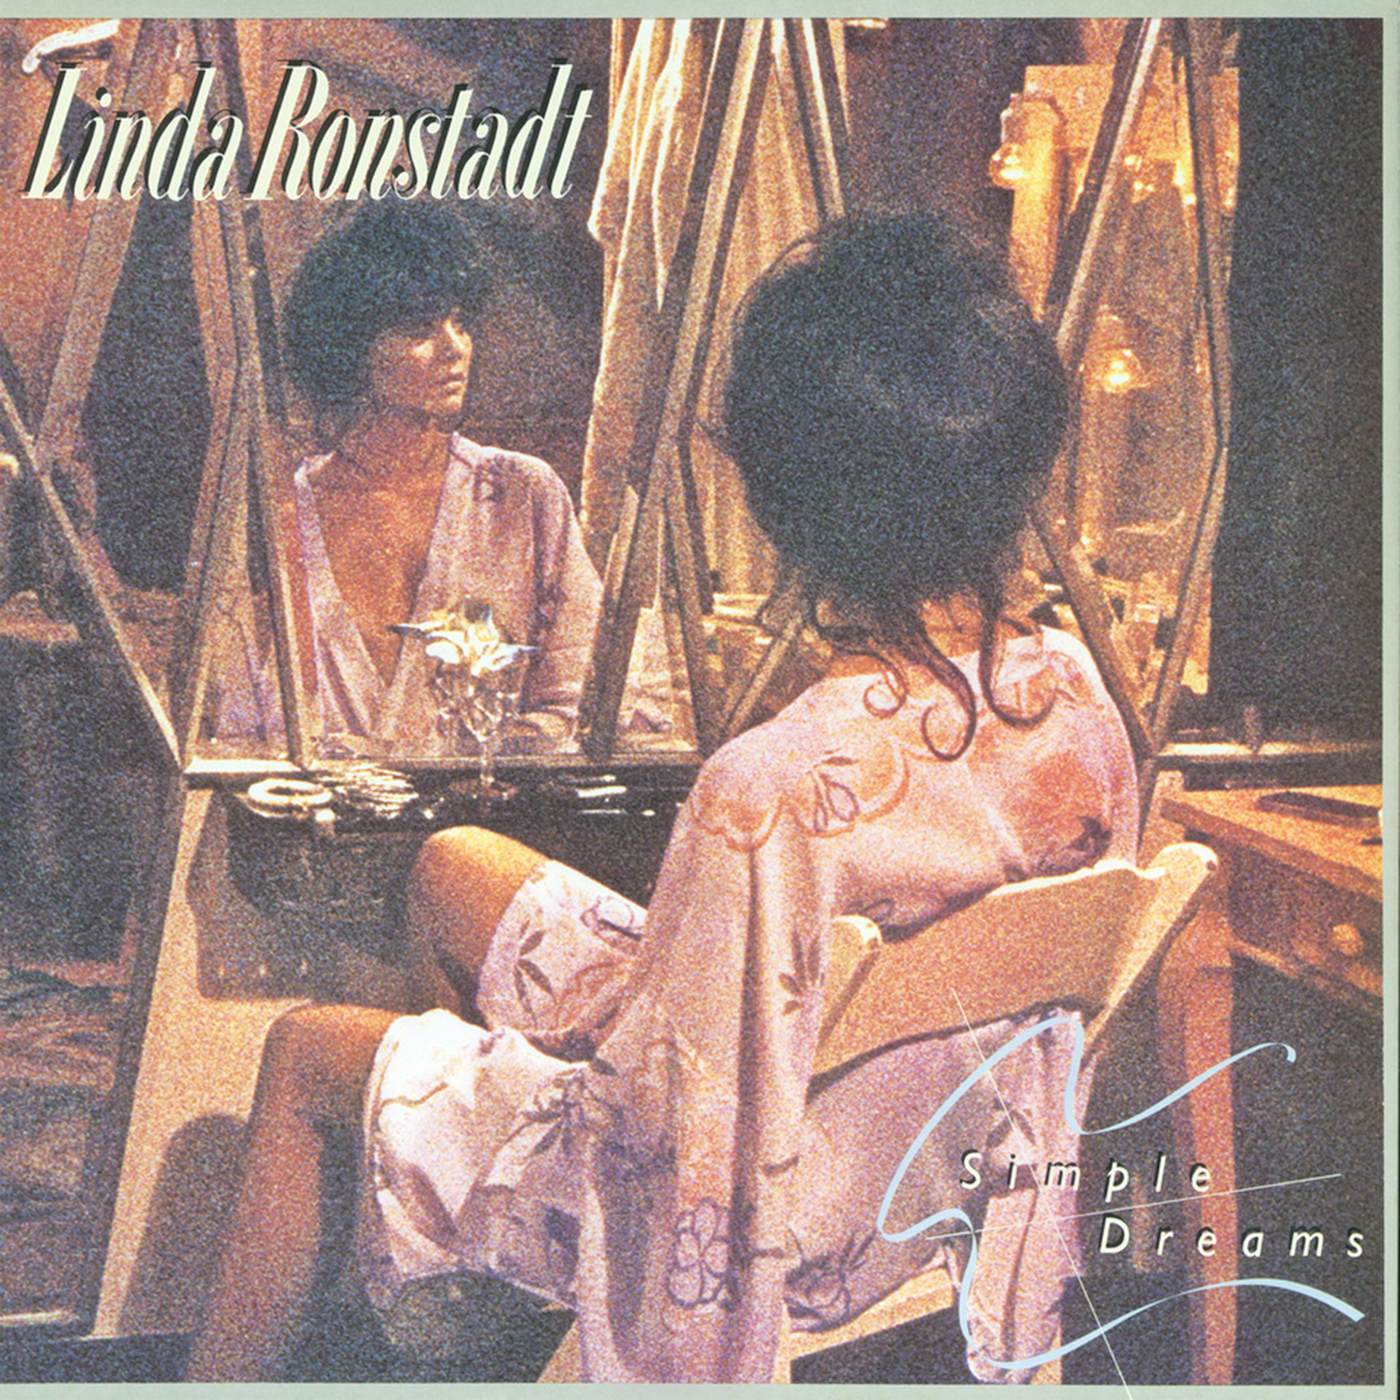 Linda Ronstadt Simple Dreams (40th Anniversary Edition) Vinyl Record